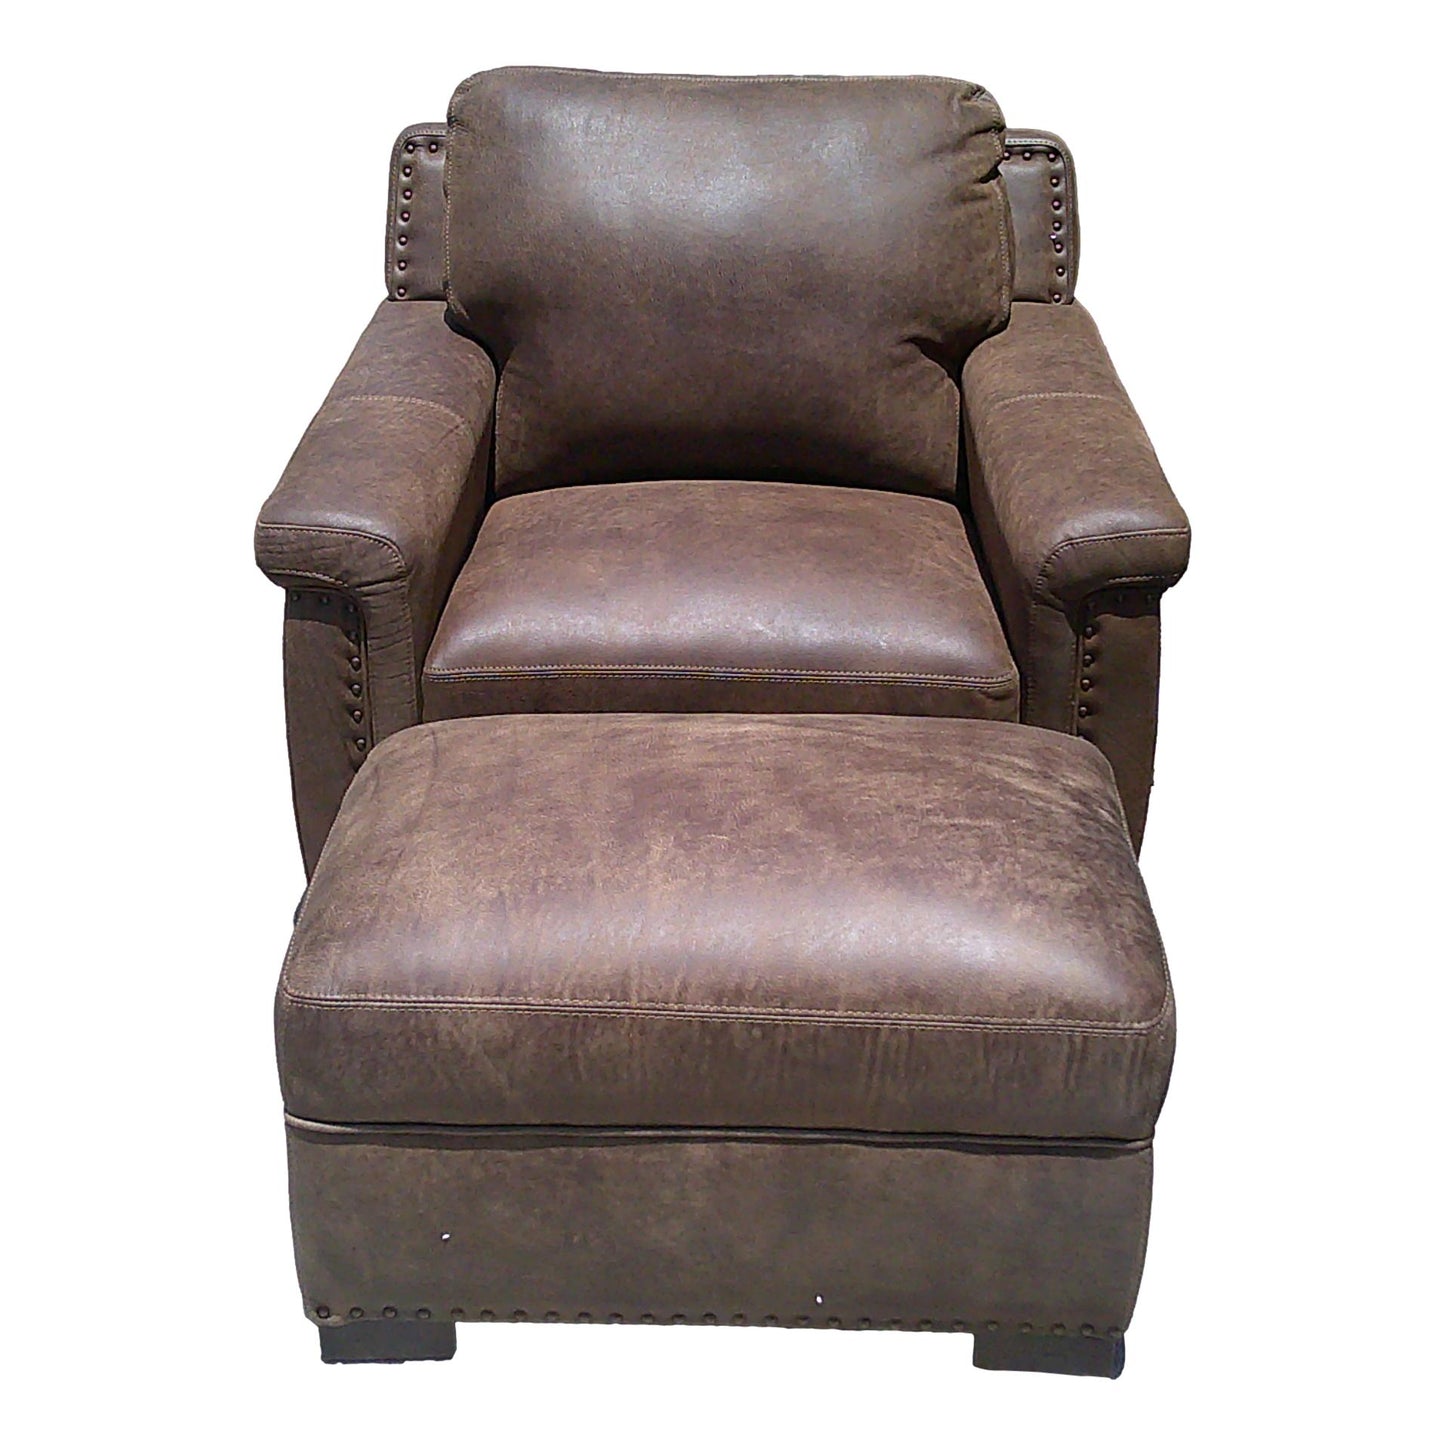 Chair w/ Ottoman